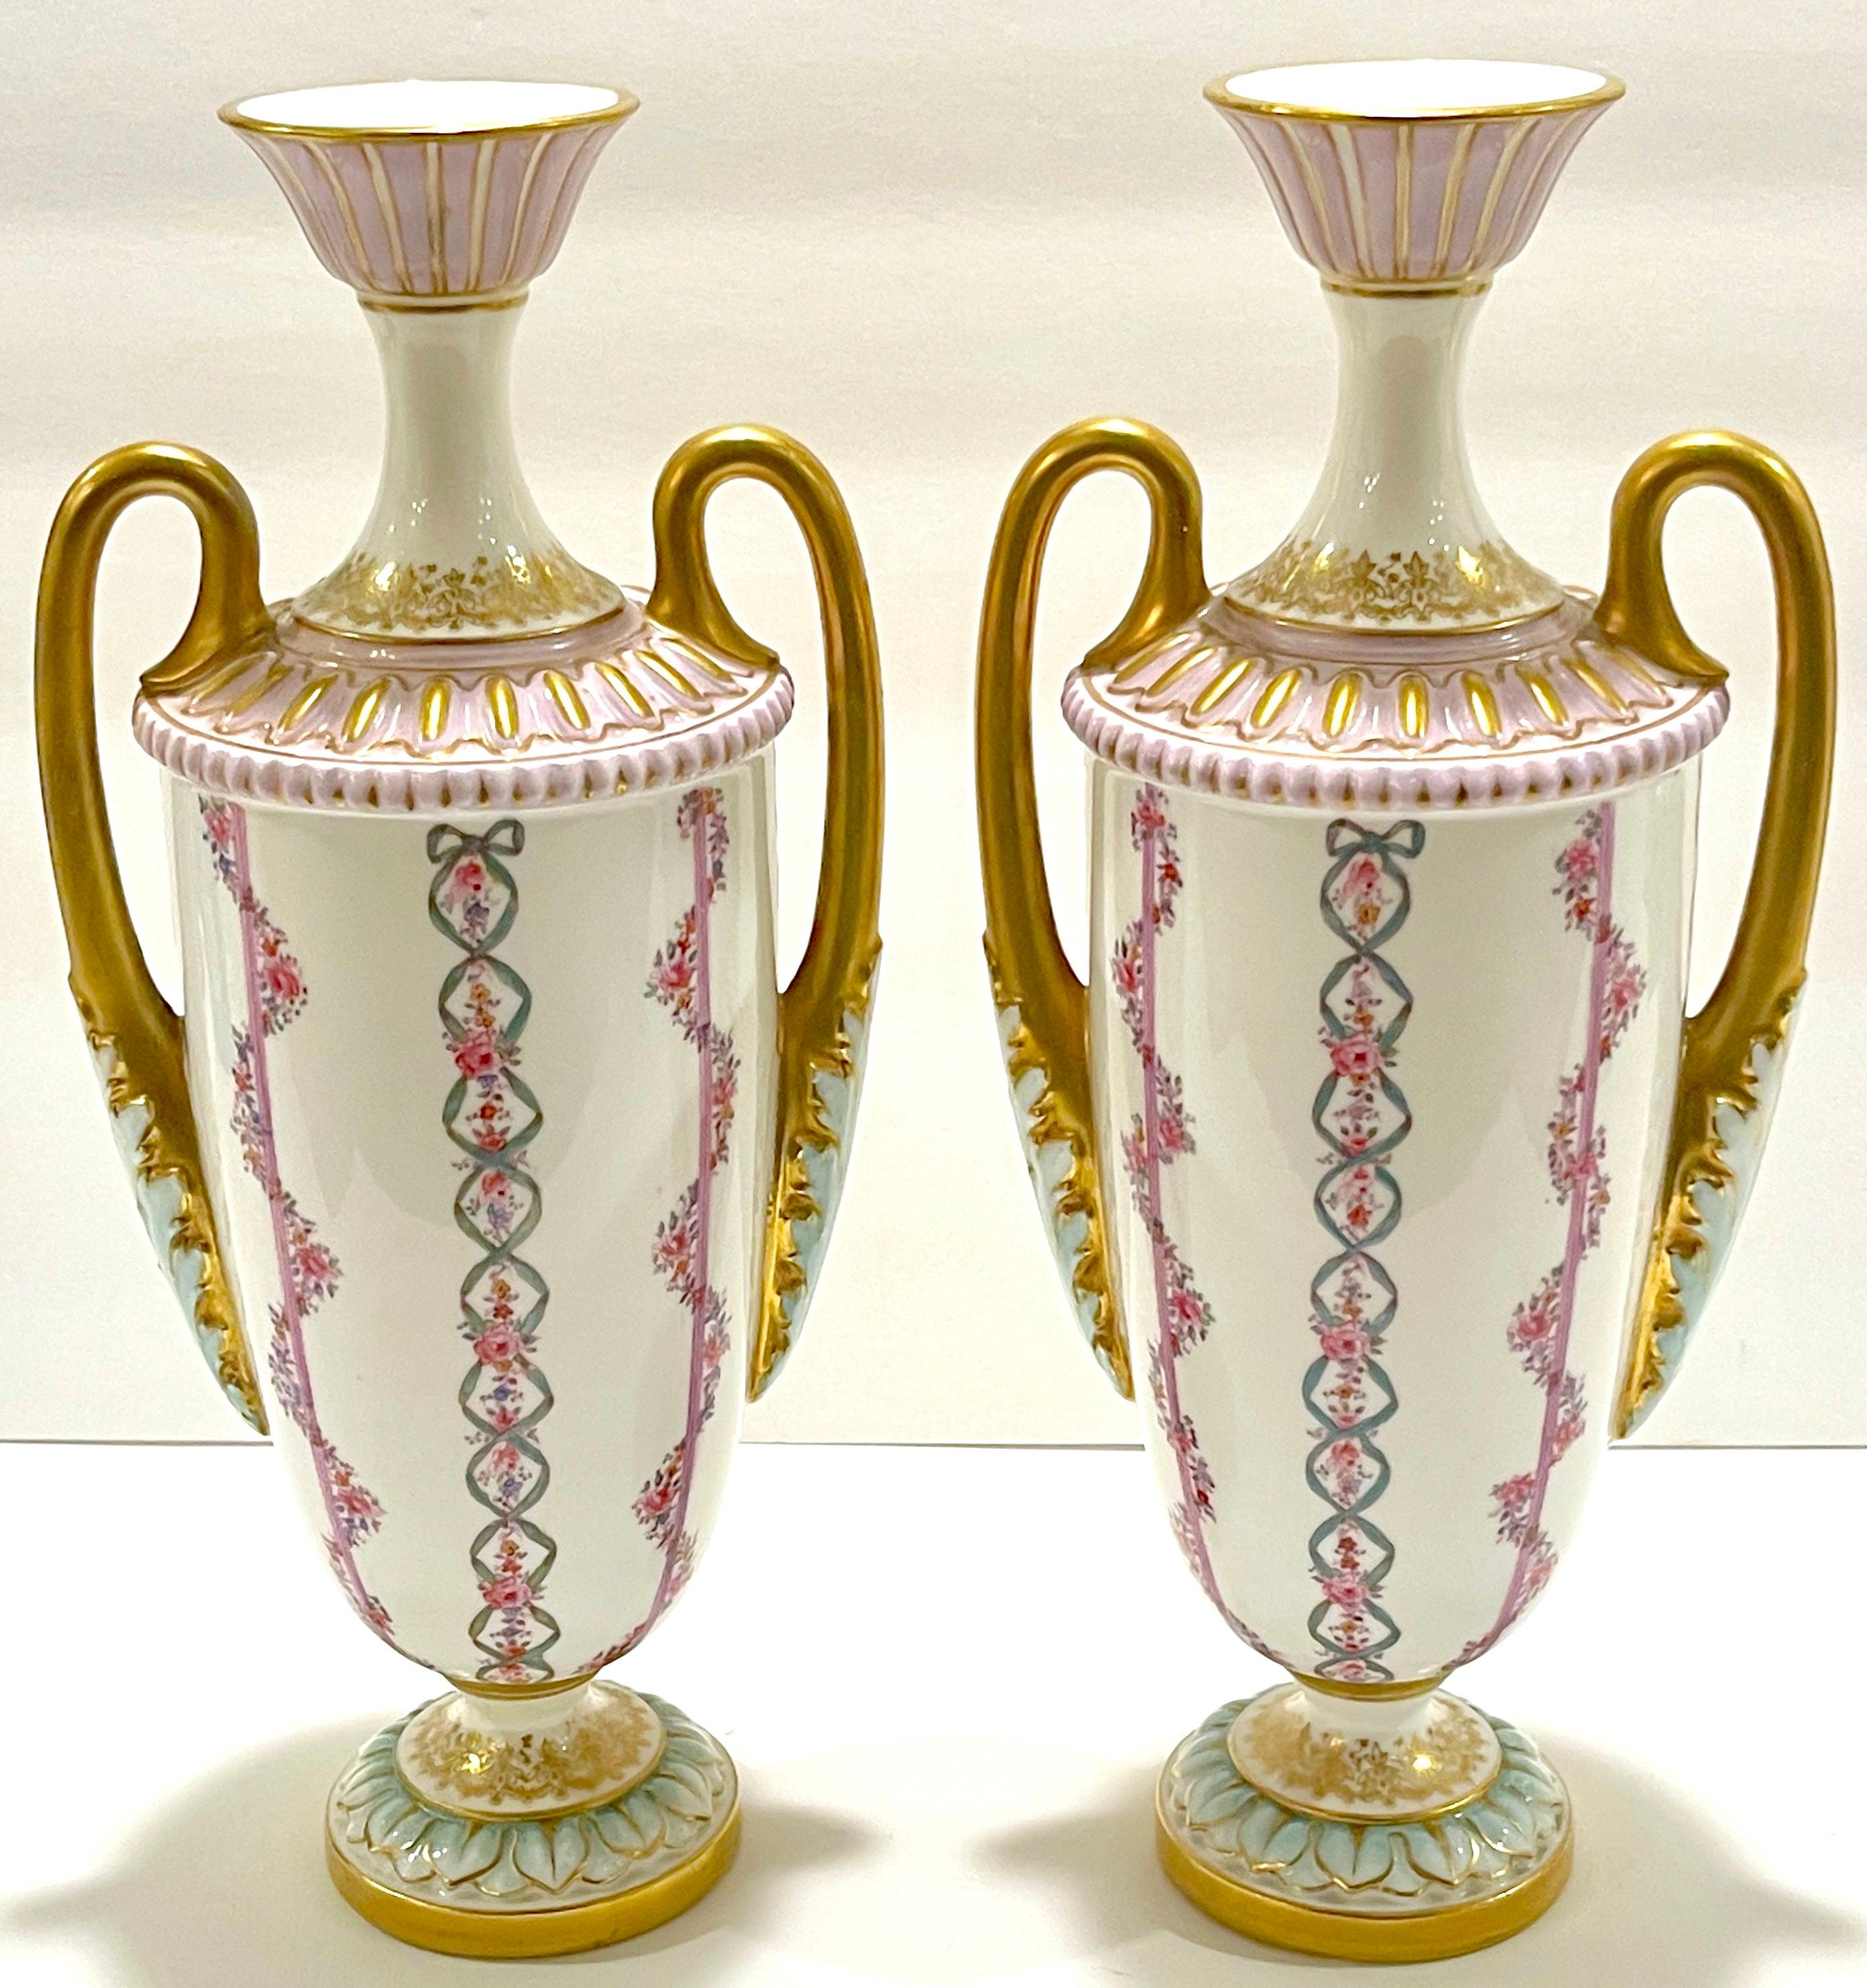 Paire de vases de style néoclassique transitionnel Royal Worcester, Angleterre, 1901.
Date marquée avec un backs-tamp vert avec cinq points à gauche et à droite.
Glace sans plomb - marque d'immatriculation anglaise

Chaque vase, de forme #2129,